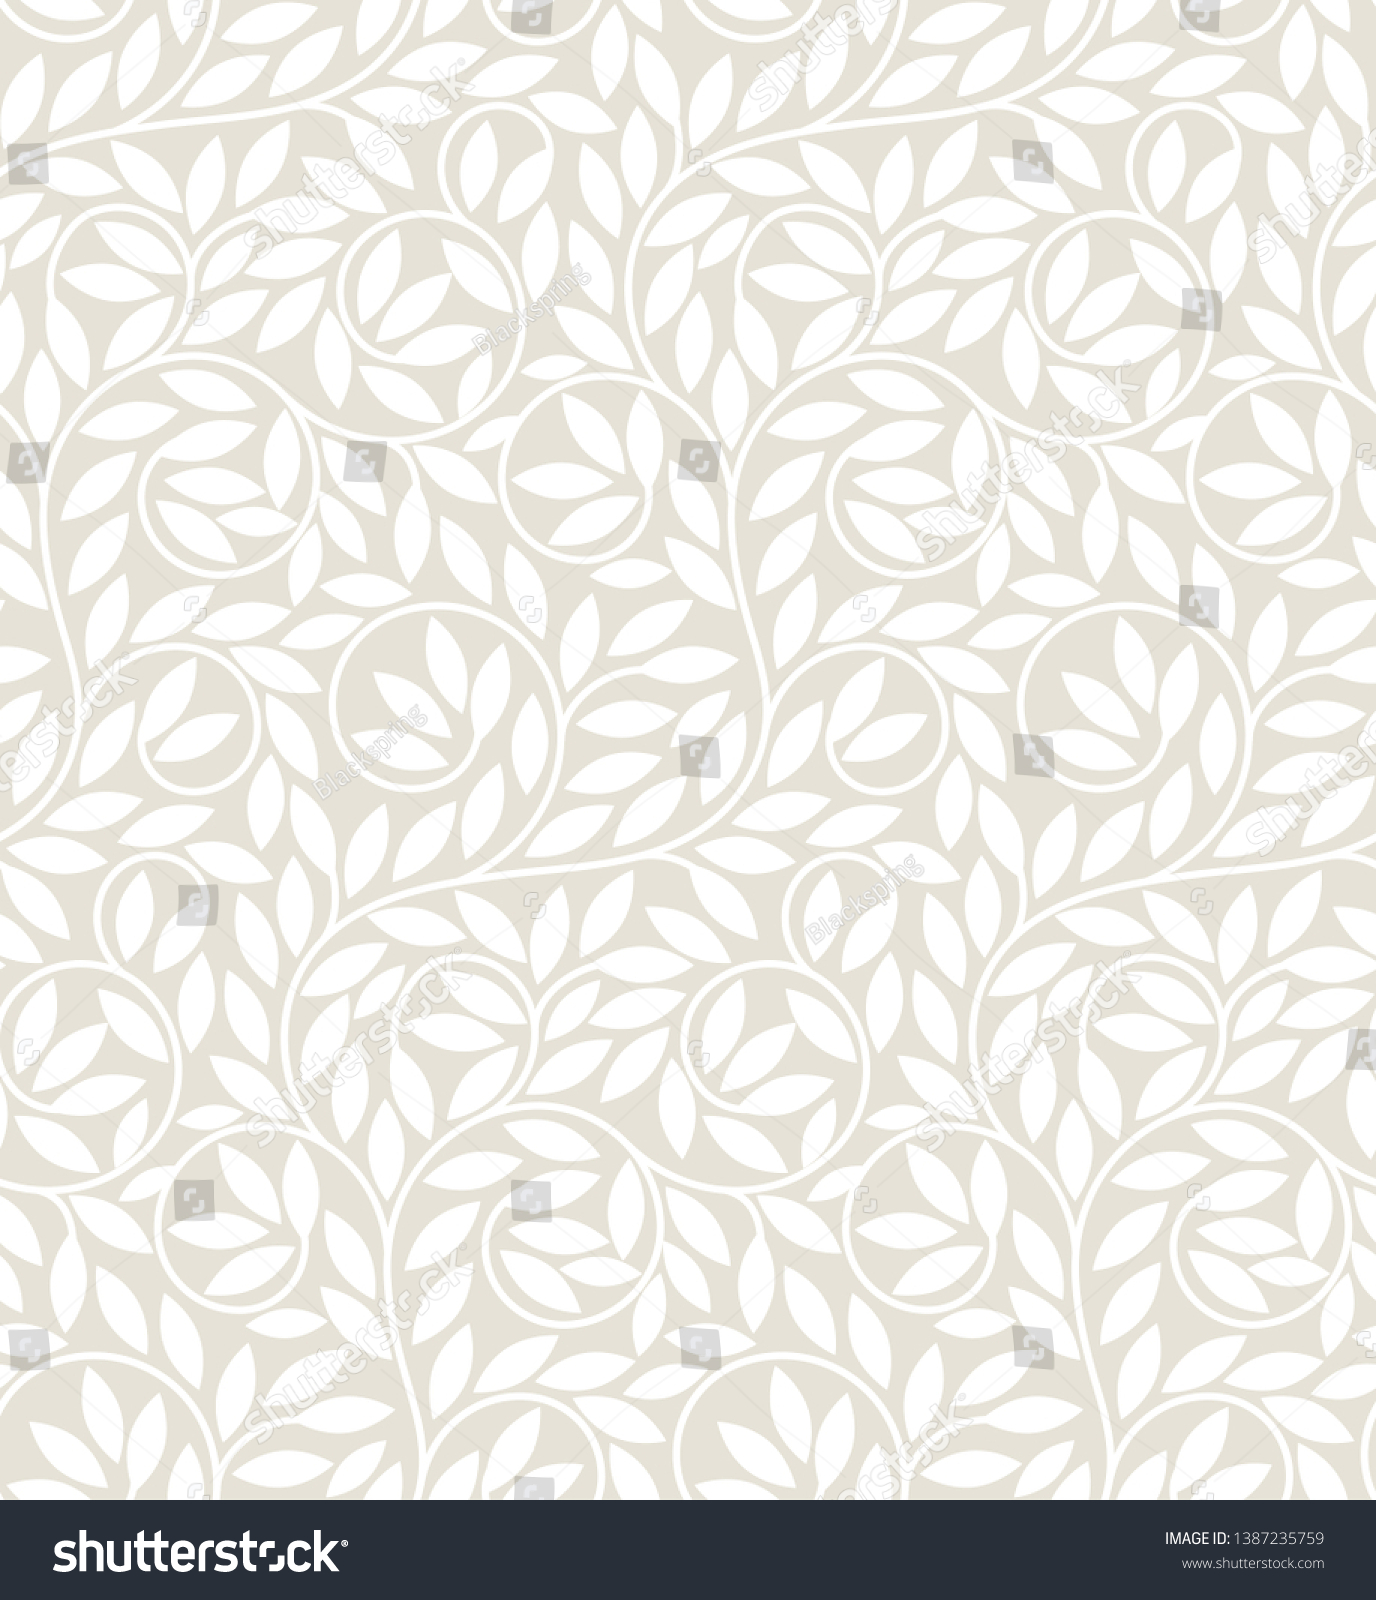 シームレスな登山植物のパターン 壁紙 包装 繊維印刷 背景に適している のベクター画像素材 ロイヤリティフリー